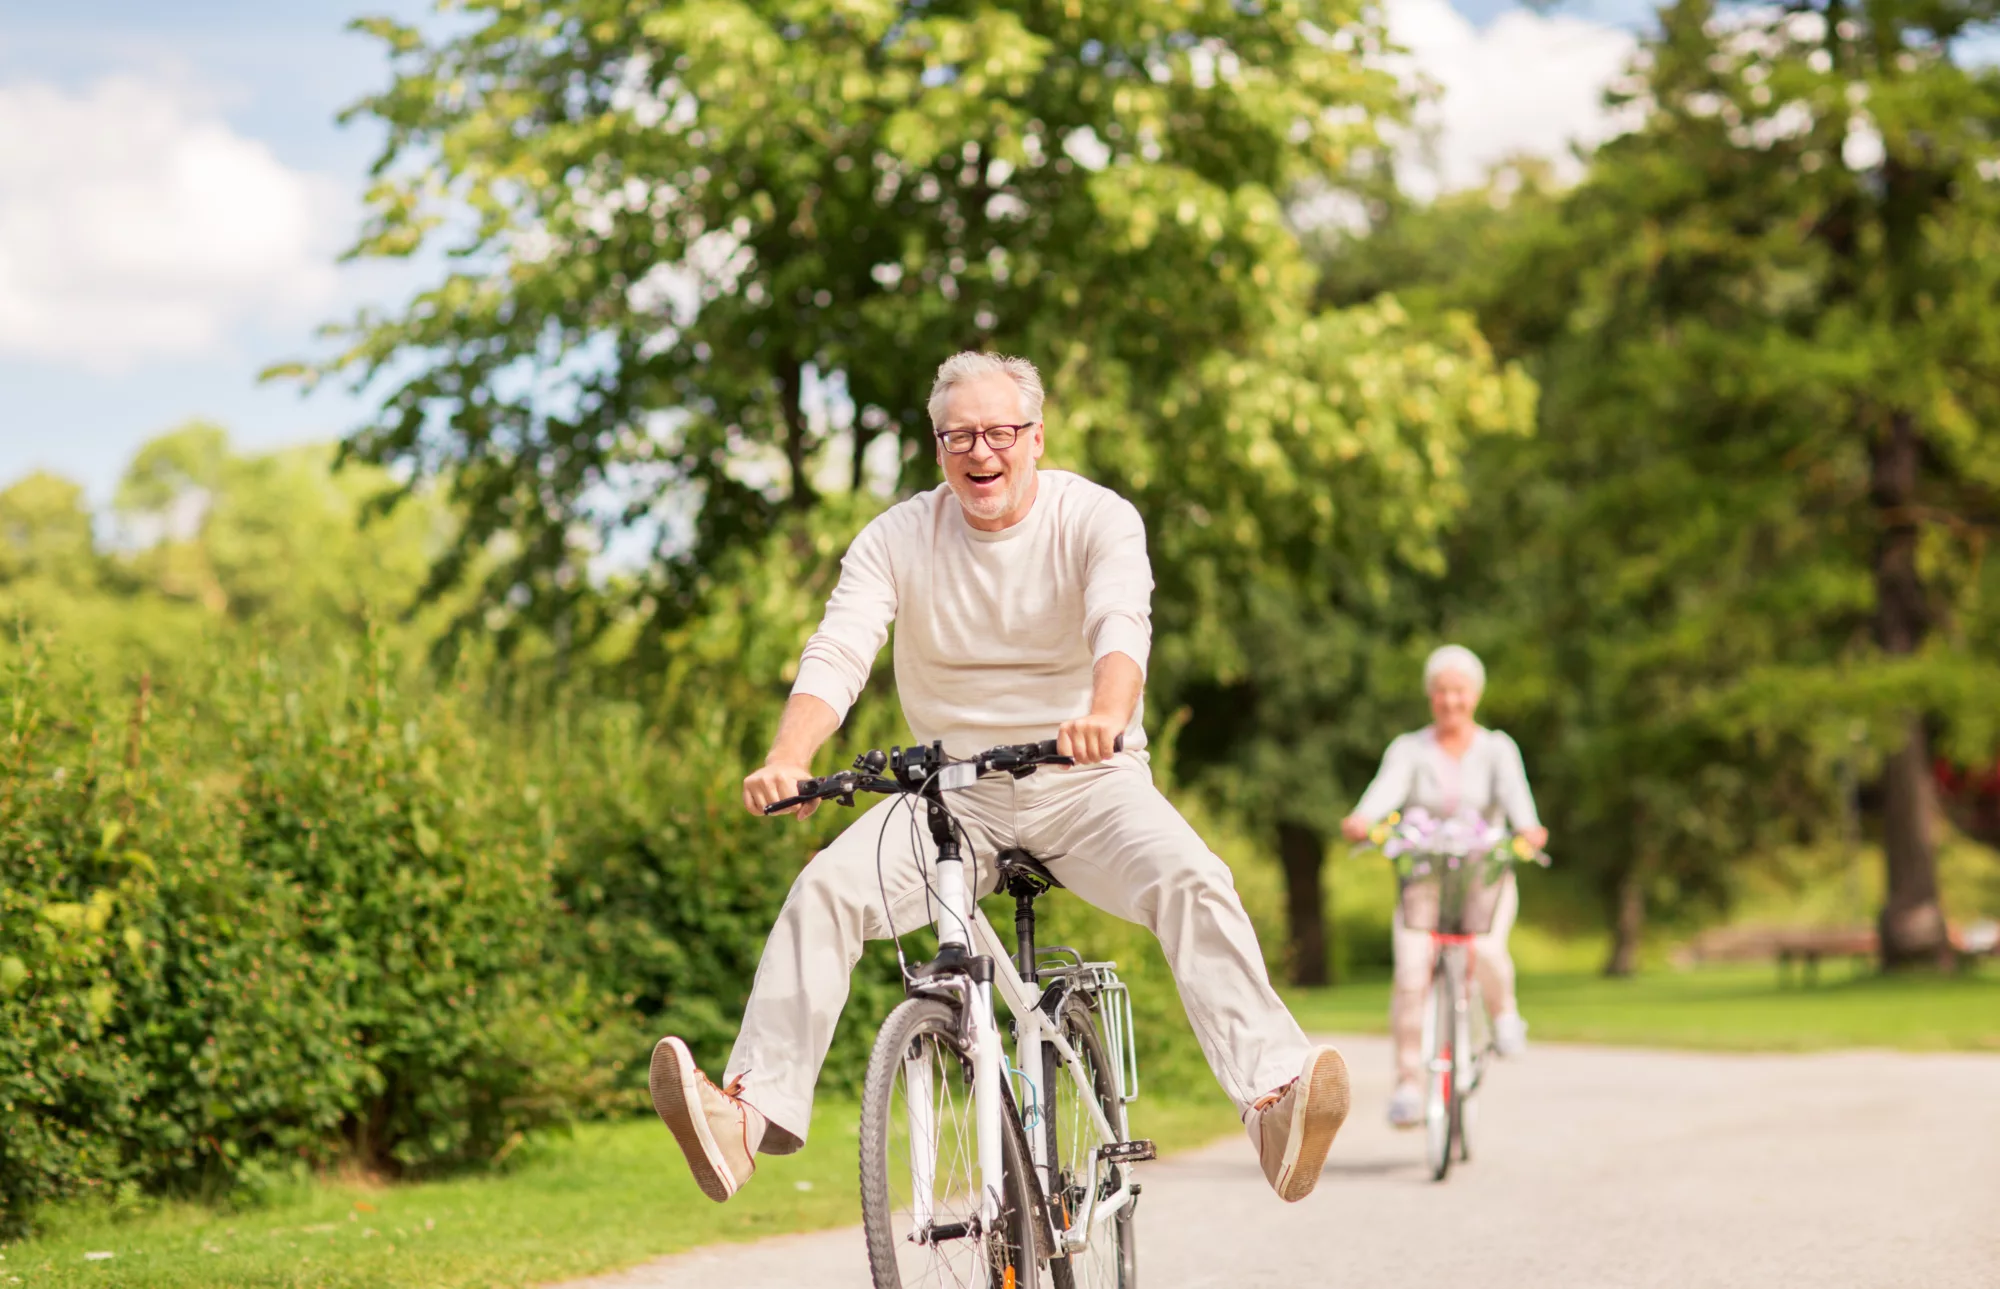 two elderly people riding bikes, having fun